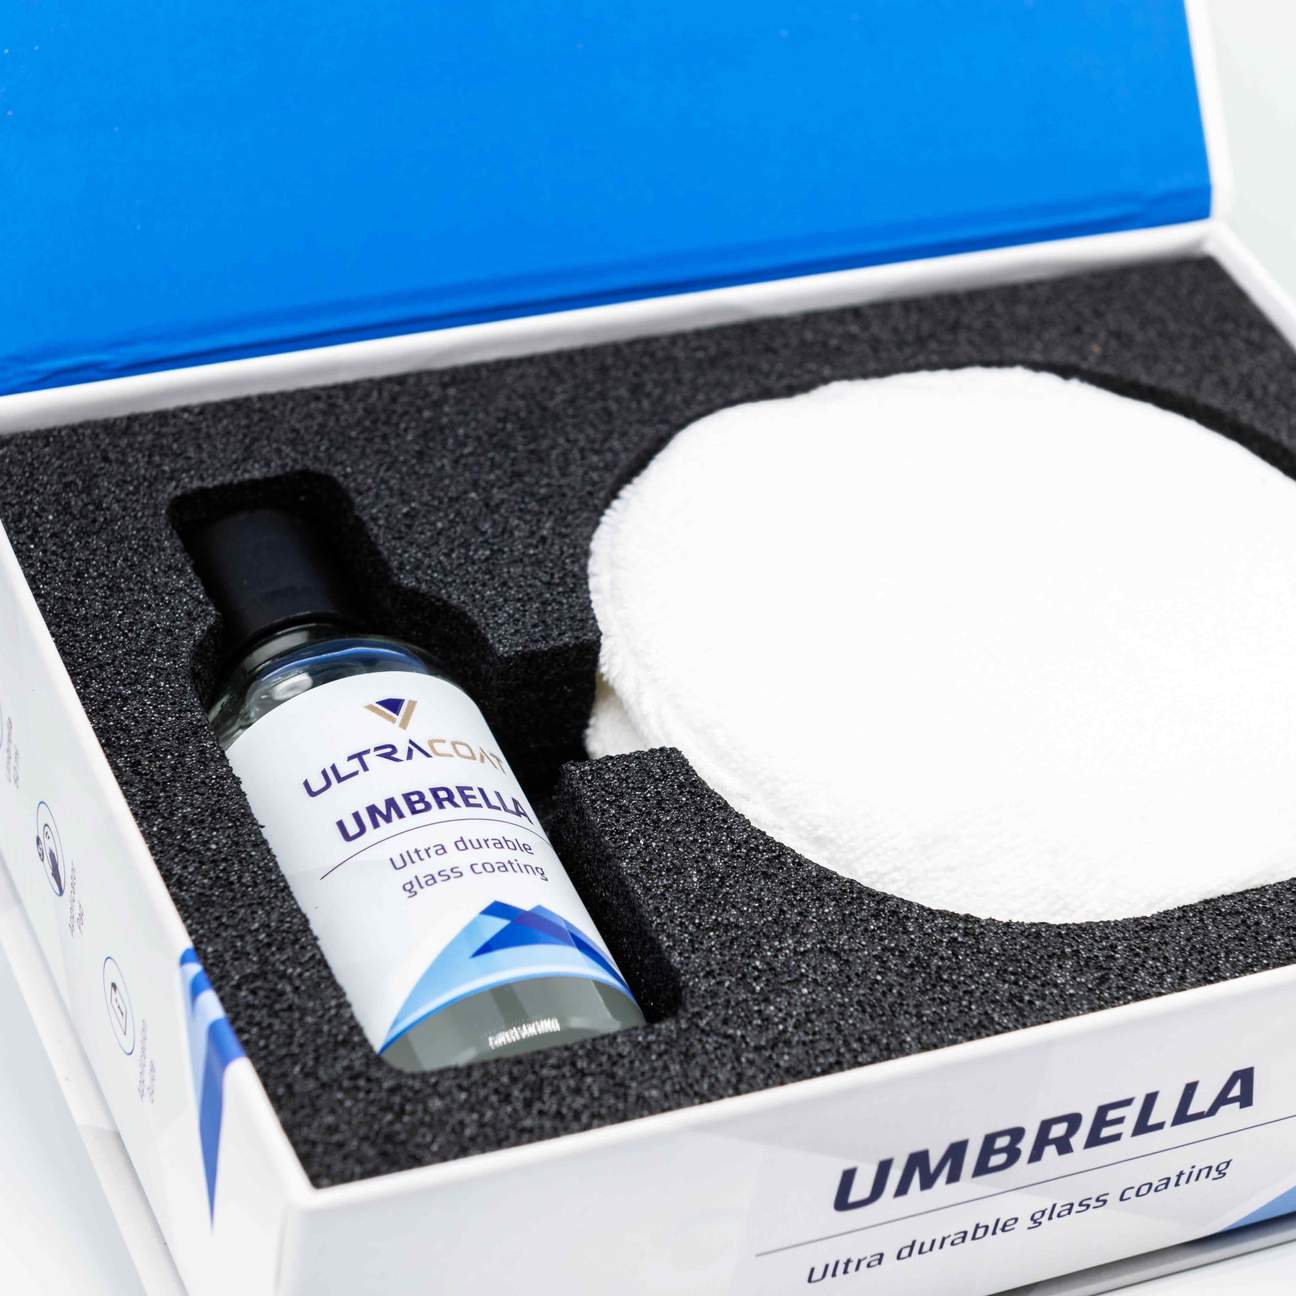 UltraCoat Umbrella - Trattamento nanotecnologico antiacqua vetri